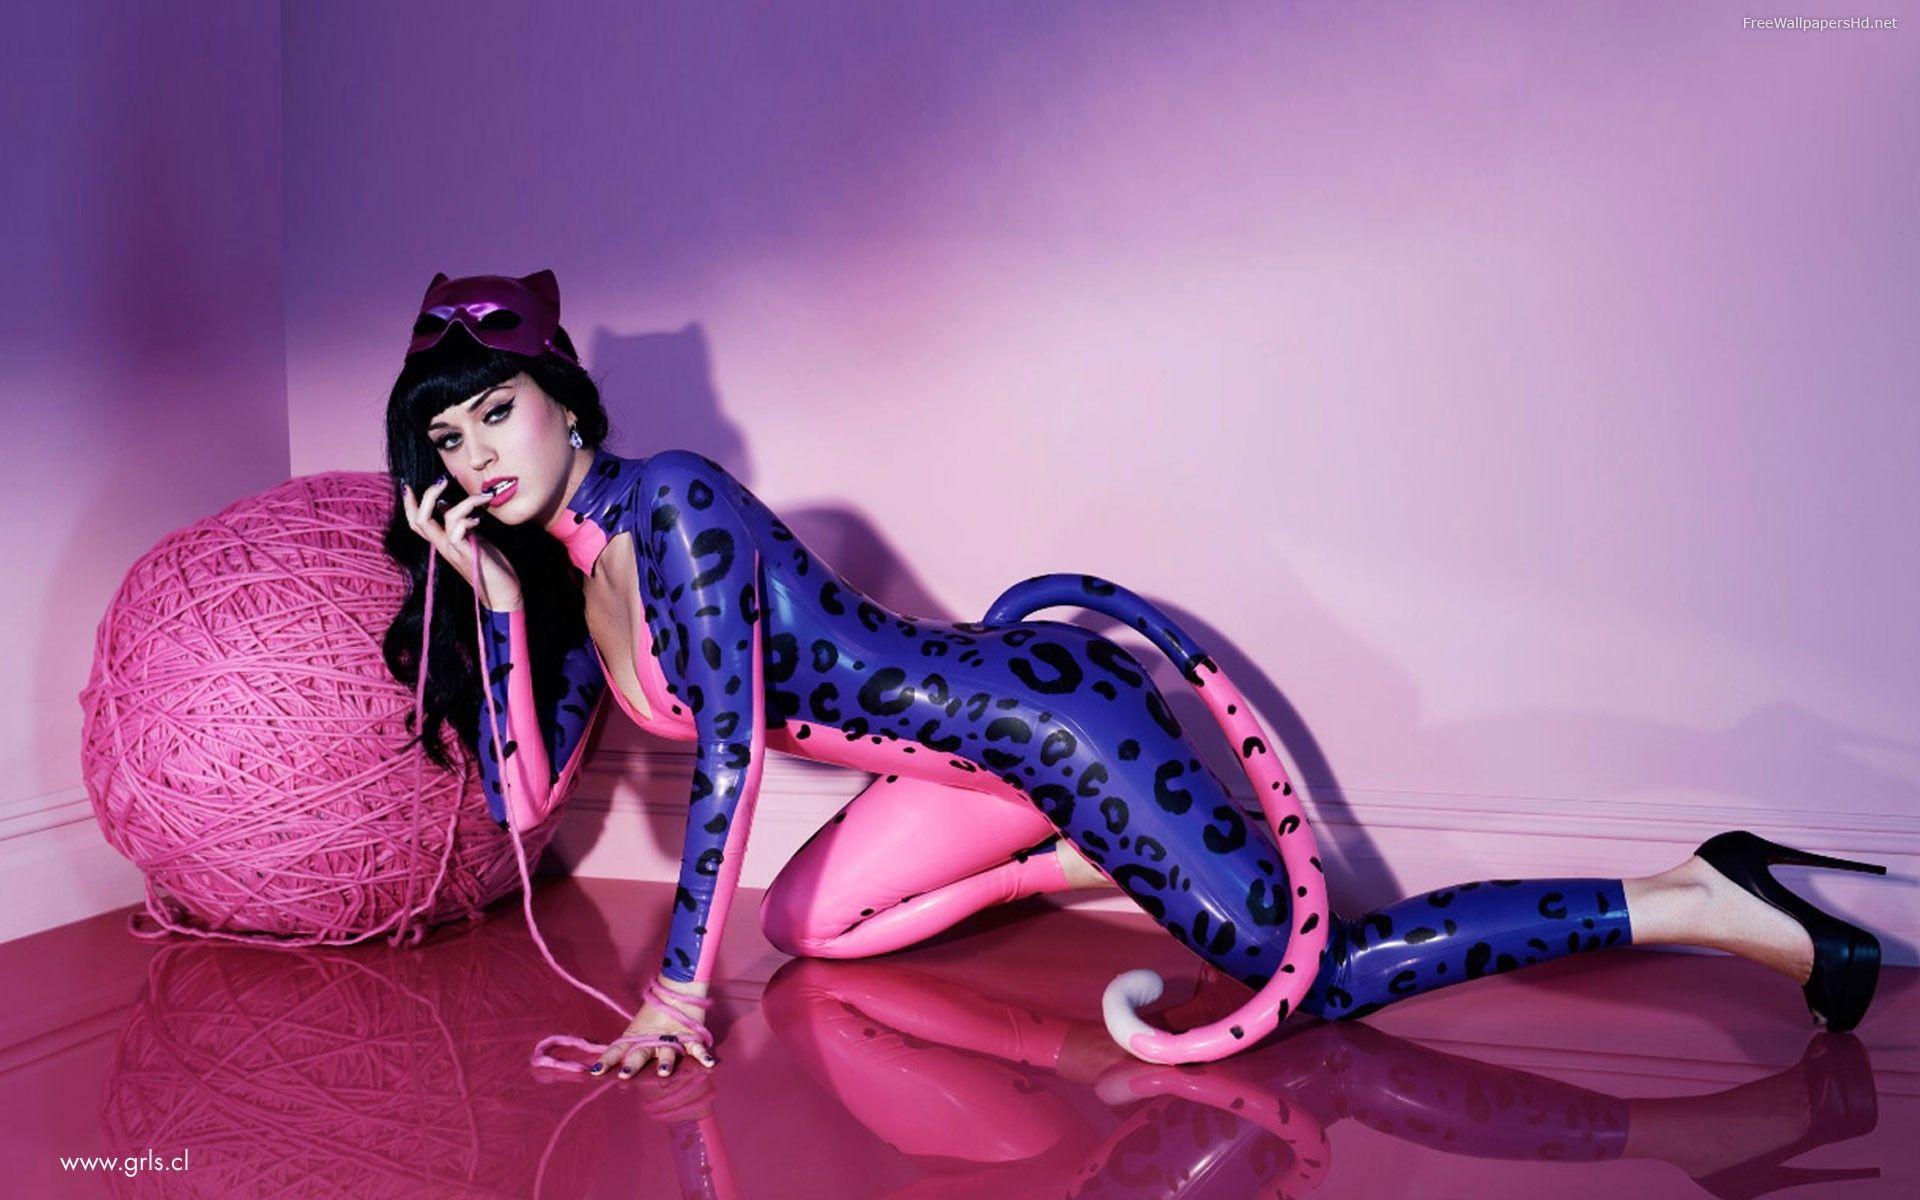 Leopard Suit Katy Perry HD Wallpaper « wallpaperzwide.com. Free